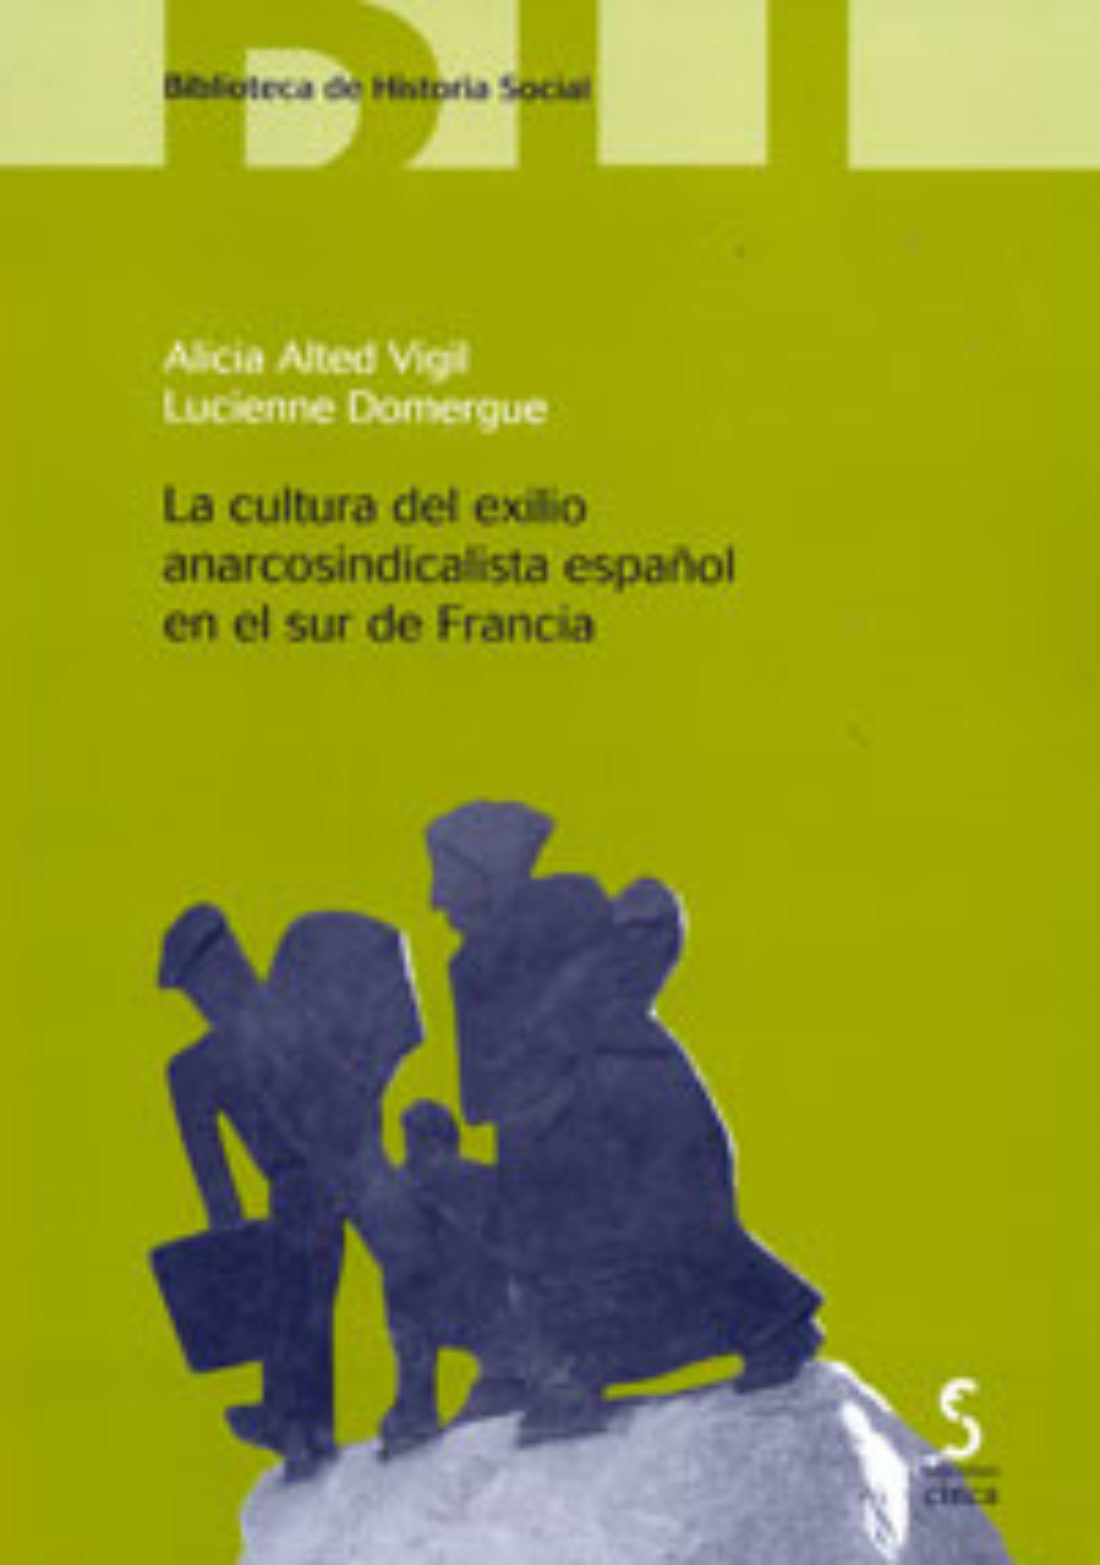 Presentación del libro: «La cultura del exilio anarcosindicalista español en el sur de Francia»